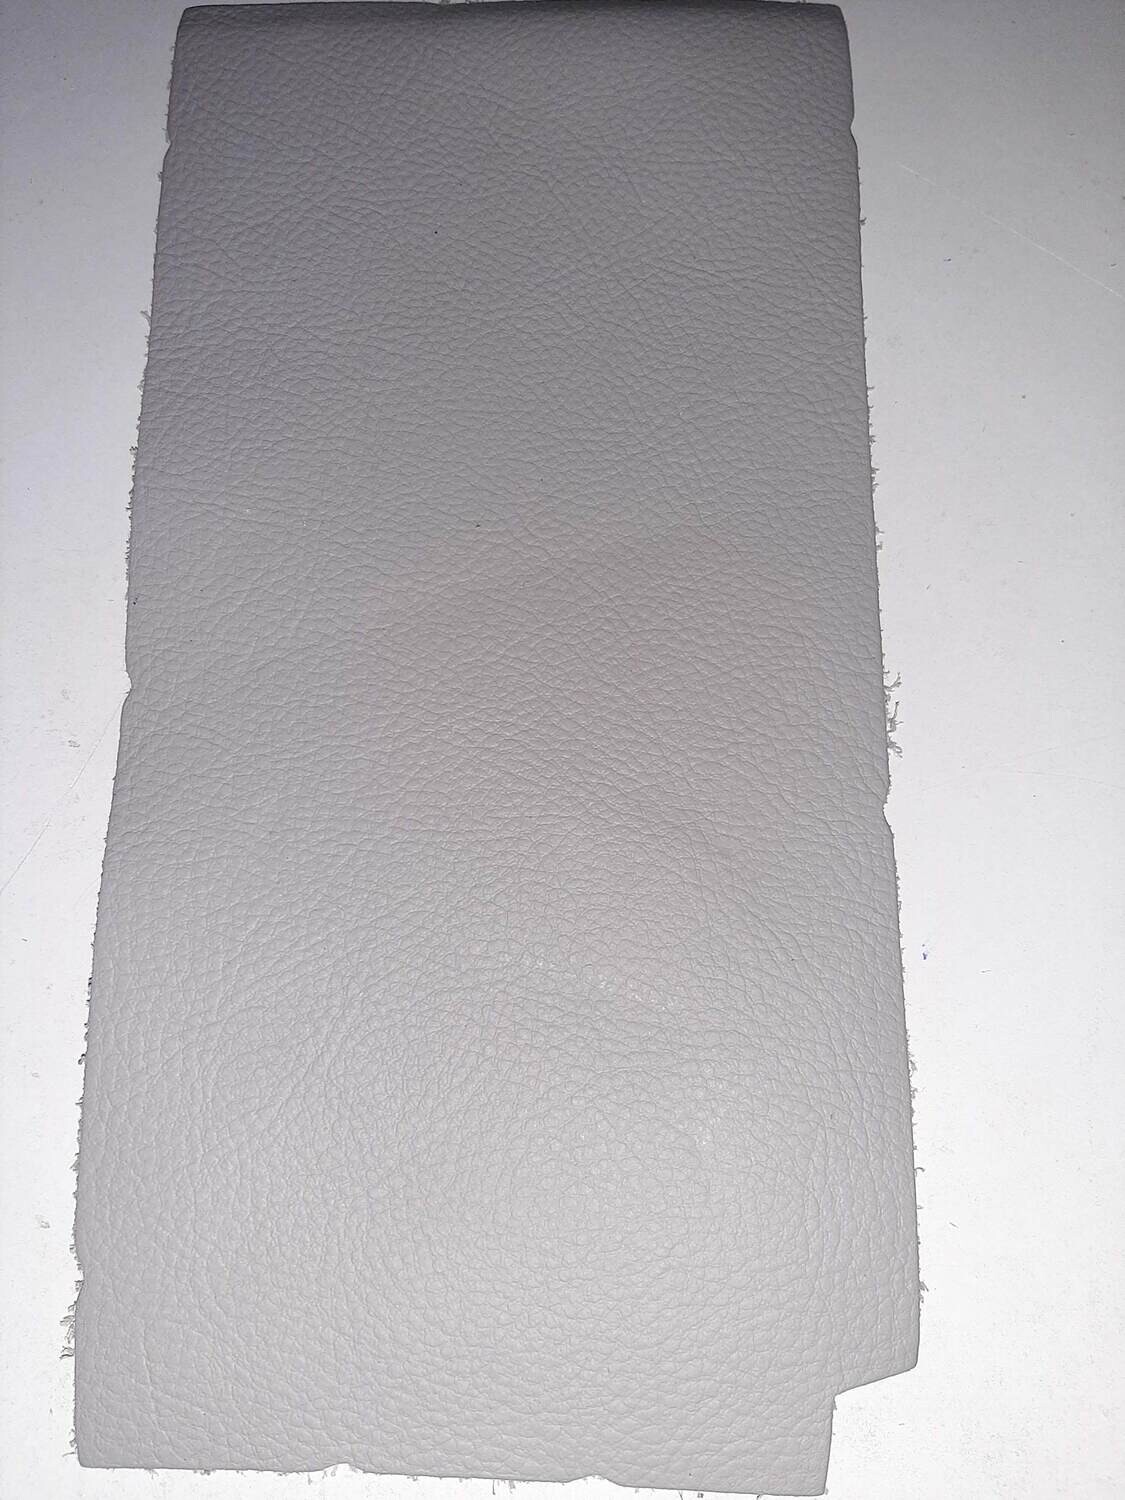 Leather pieces grey color 24 x 12 cm